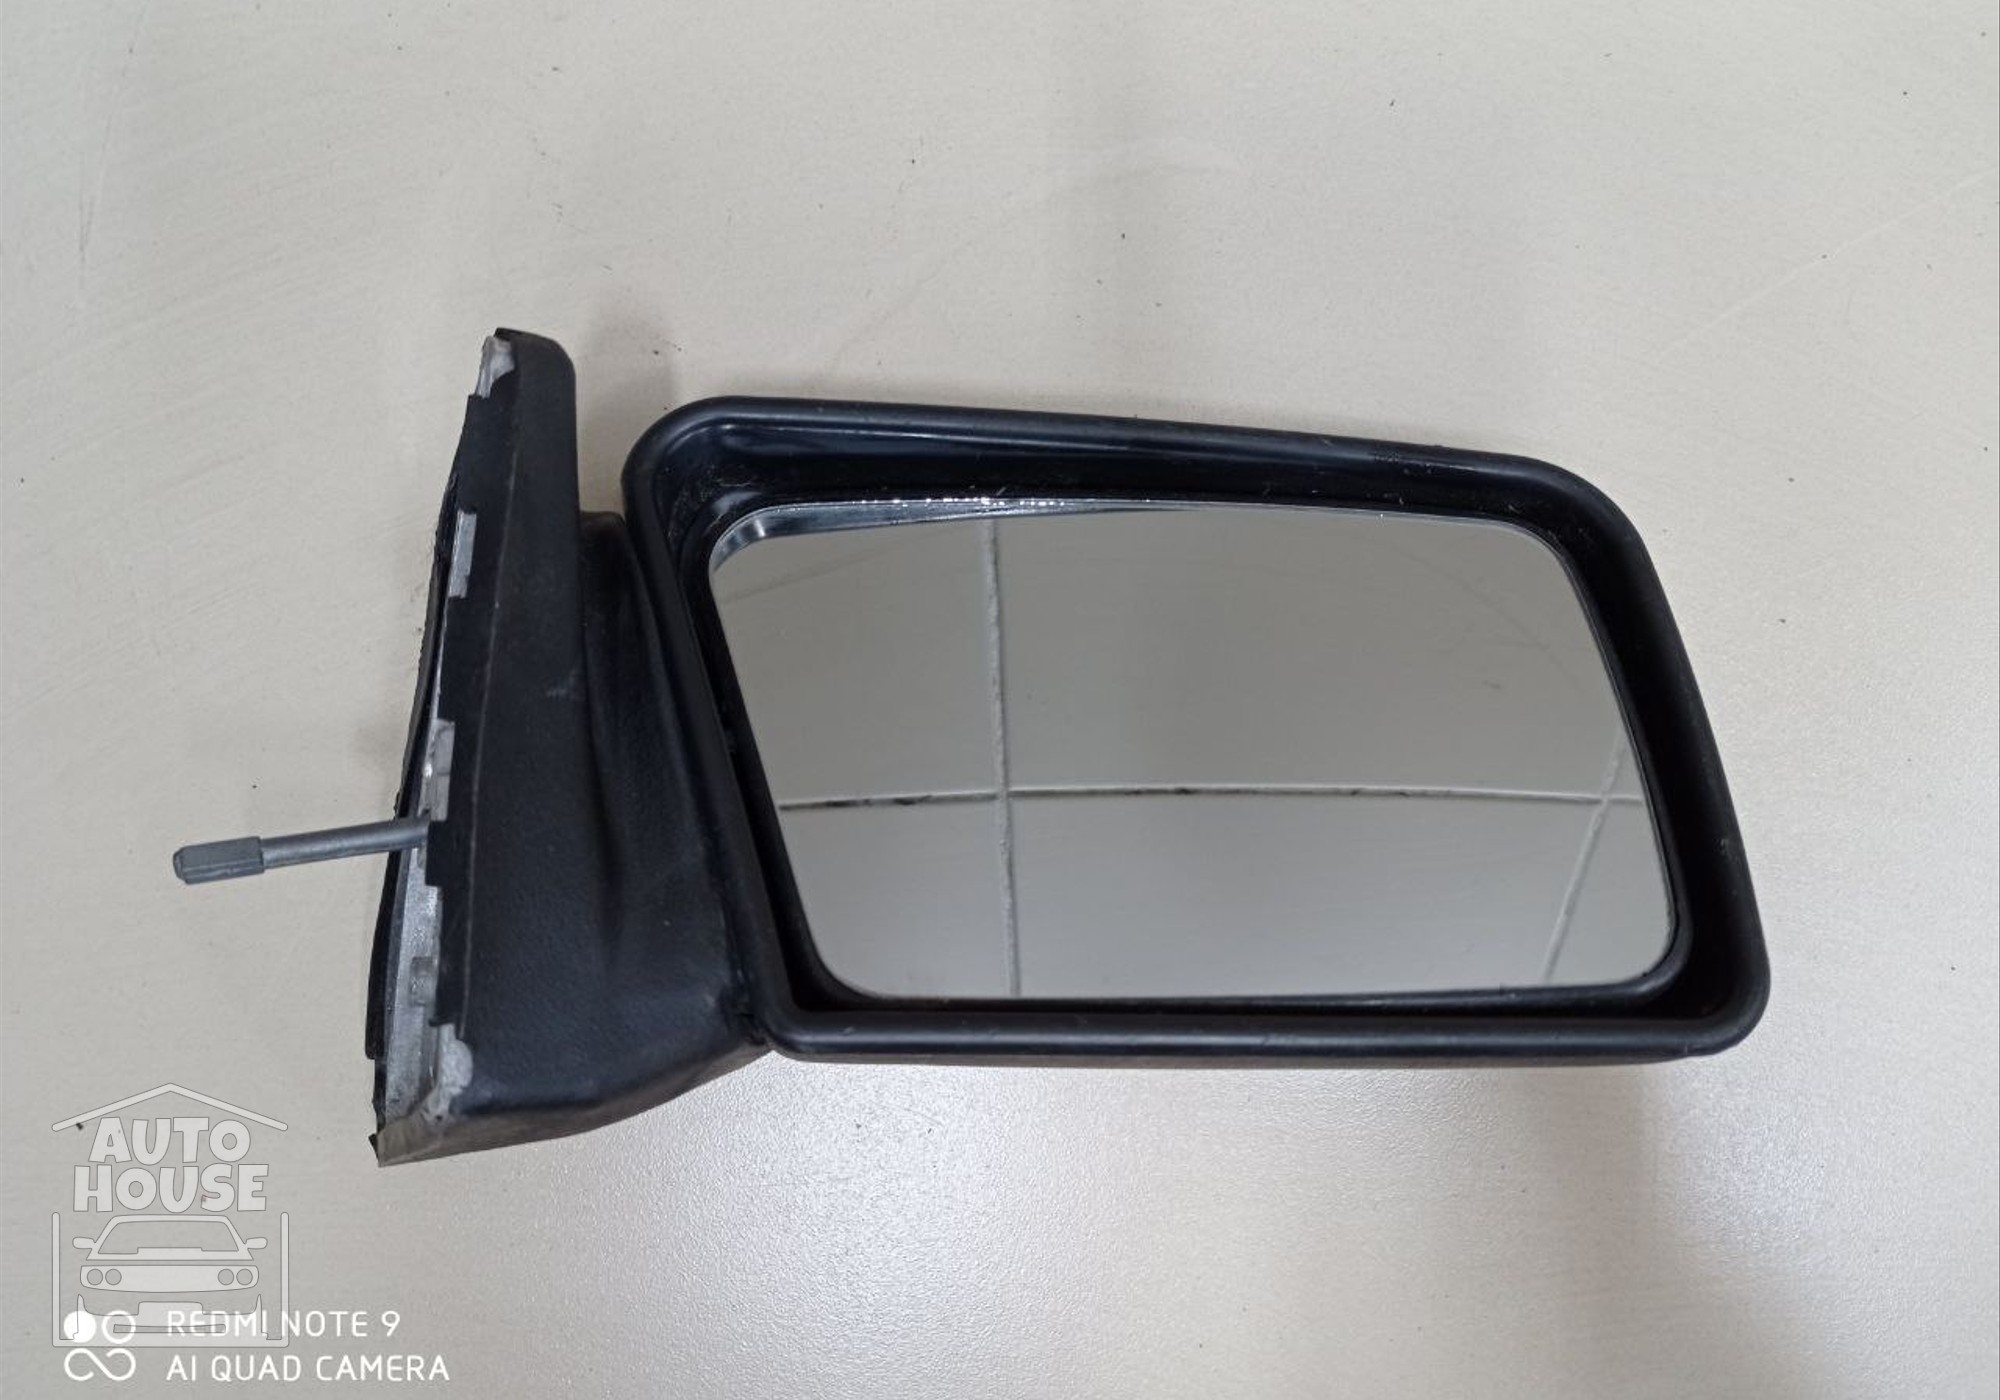 Зеркало заднего вида боковое правое для Lada 2115